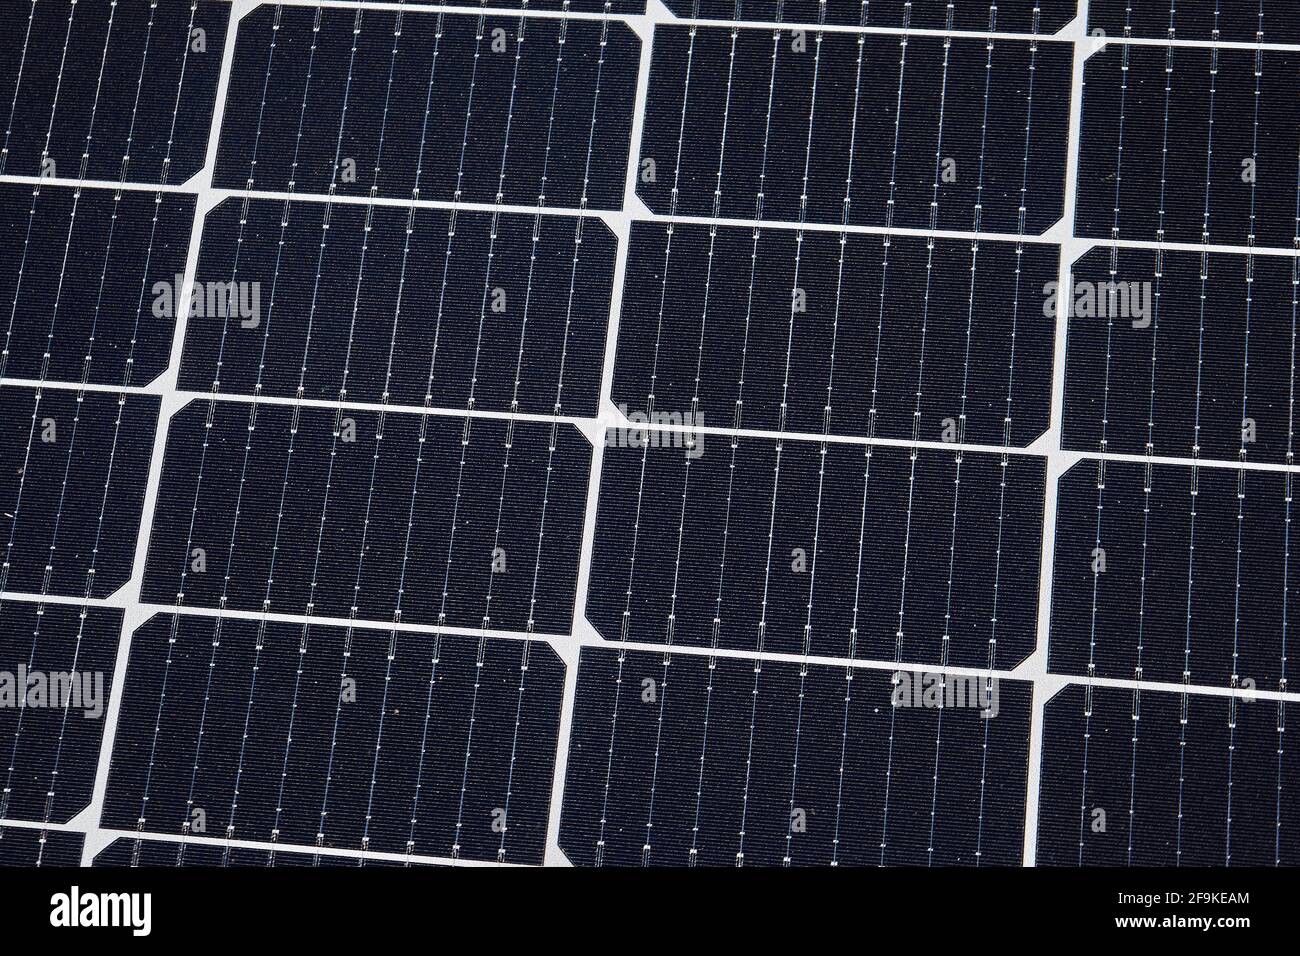 Photovoltaikanlage, Aufdachmontage, Solarmodule auf dem Dach von einem Gewerbebetrieb, geständert, Friedberg, Hessen, Deutschland Foto de stock